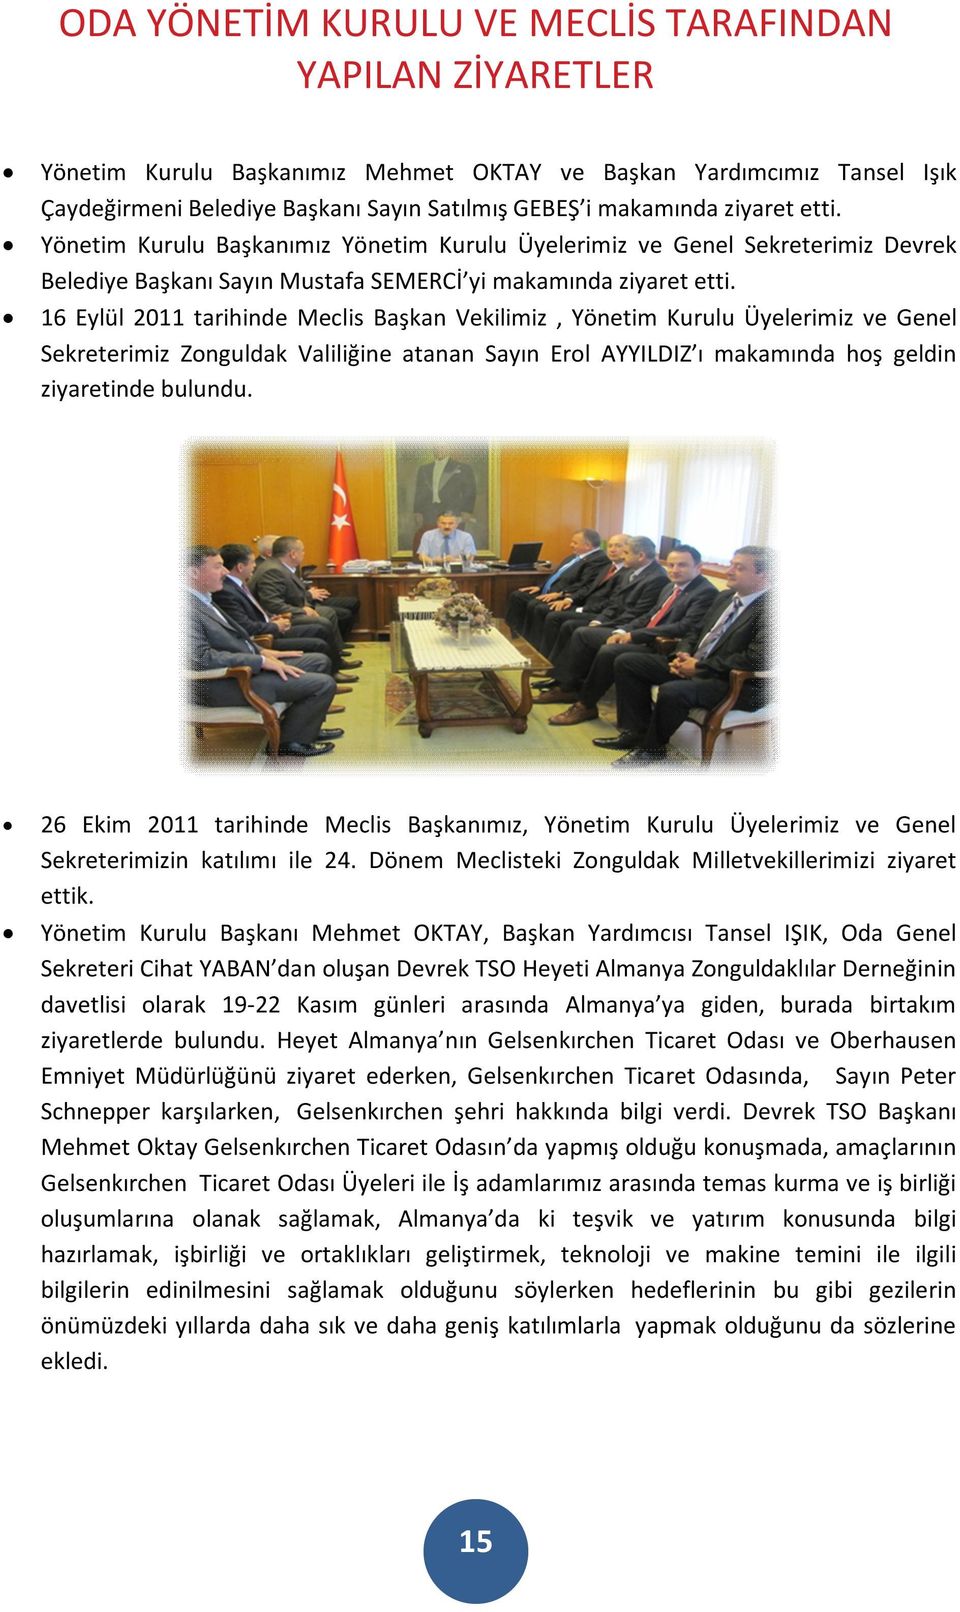 16 Eylül 2011 tarihinde Meclis Başkan Vekilimiz, Yönetim Kurulu Üyelerimiz ve Genel Sekreterimiz Zonguldak Valiliğine atanan Sayın Erol AYYILDIZ ı makamında hoş geldin ziyaretinde bulundu.